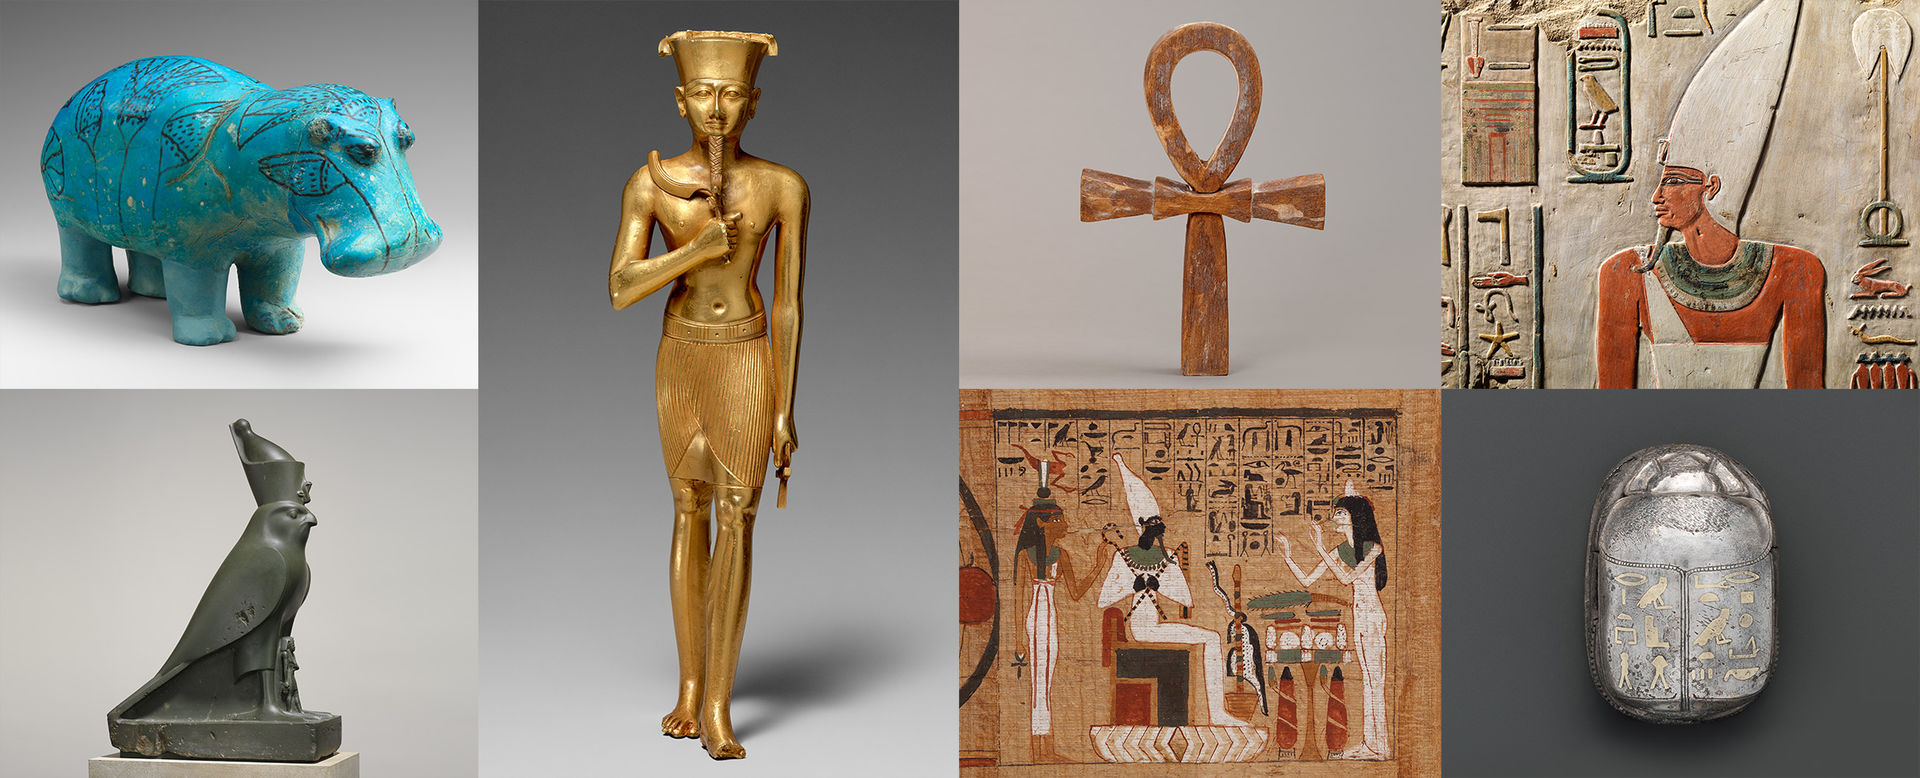 القطع الأثرية المصرية بمتحف متروبوليتان  (13)